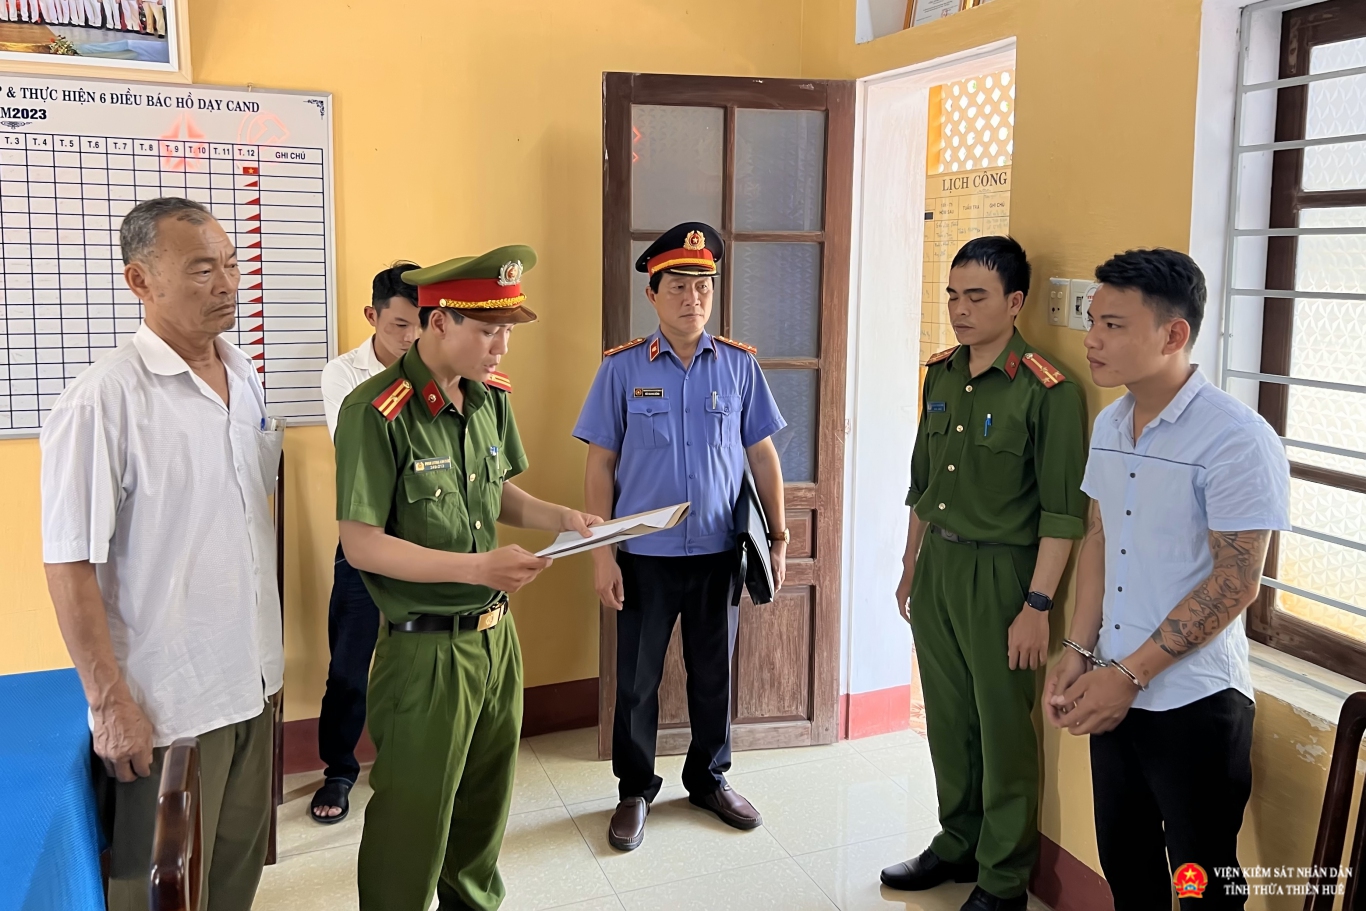 Cơ quan CSĐT Công an tỉnh Thừa Thiên Huế đọc Quyết định khởi tố vụ án, Quyết định khởi tố bị can và Lệnh bắt bị can để tạm giam đối với Ngô Hùng Trường